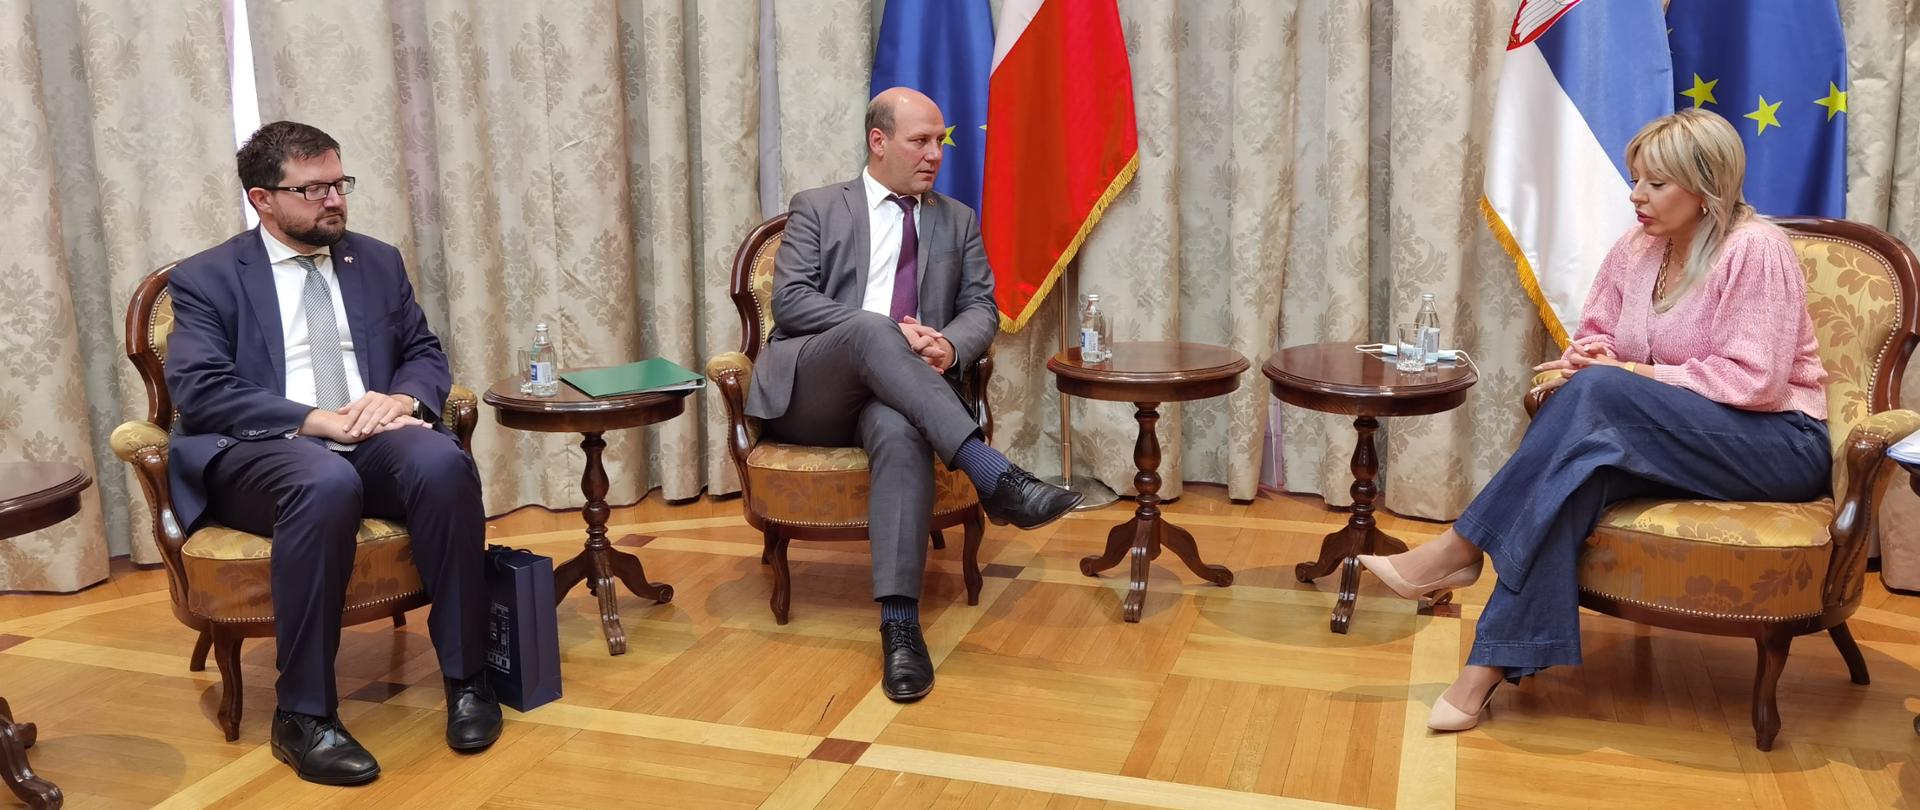 Wiceminister Szymon Szynkowski vel Sęk z wizytą w Belgradzie